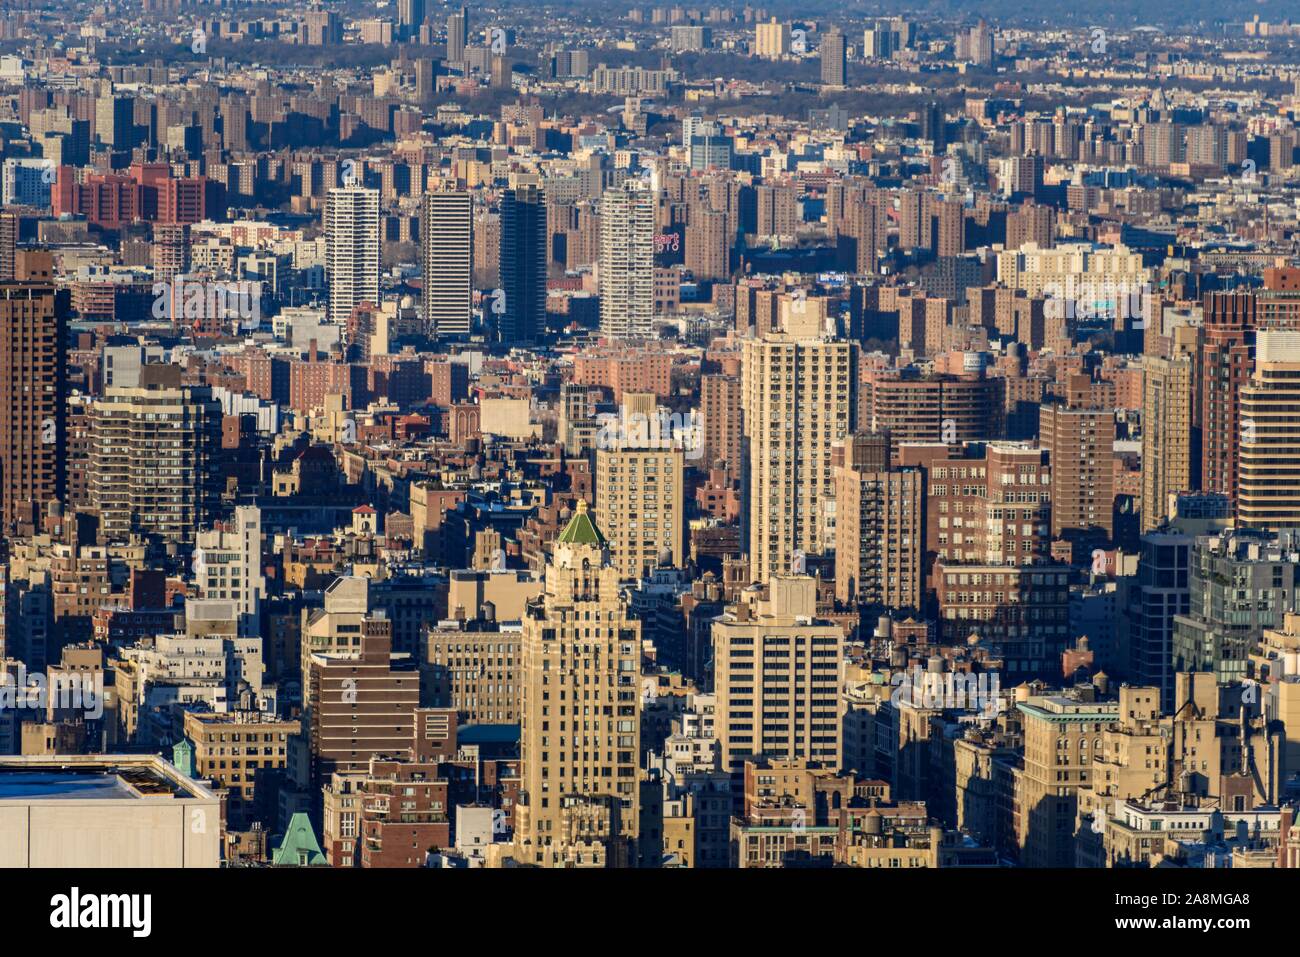 Vue sur la ville, vue d'immeubles résidentiels, Manhattan, New York City, New York State, USA Banque D'Images